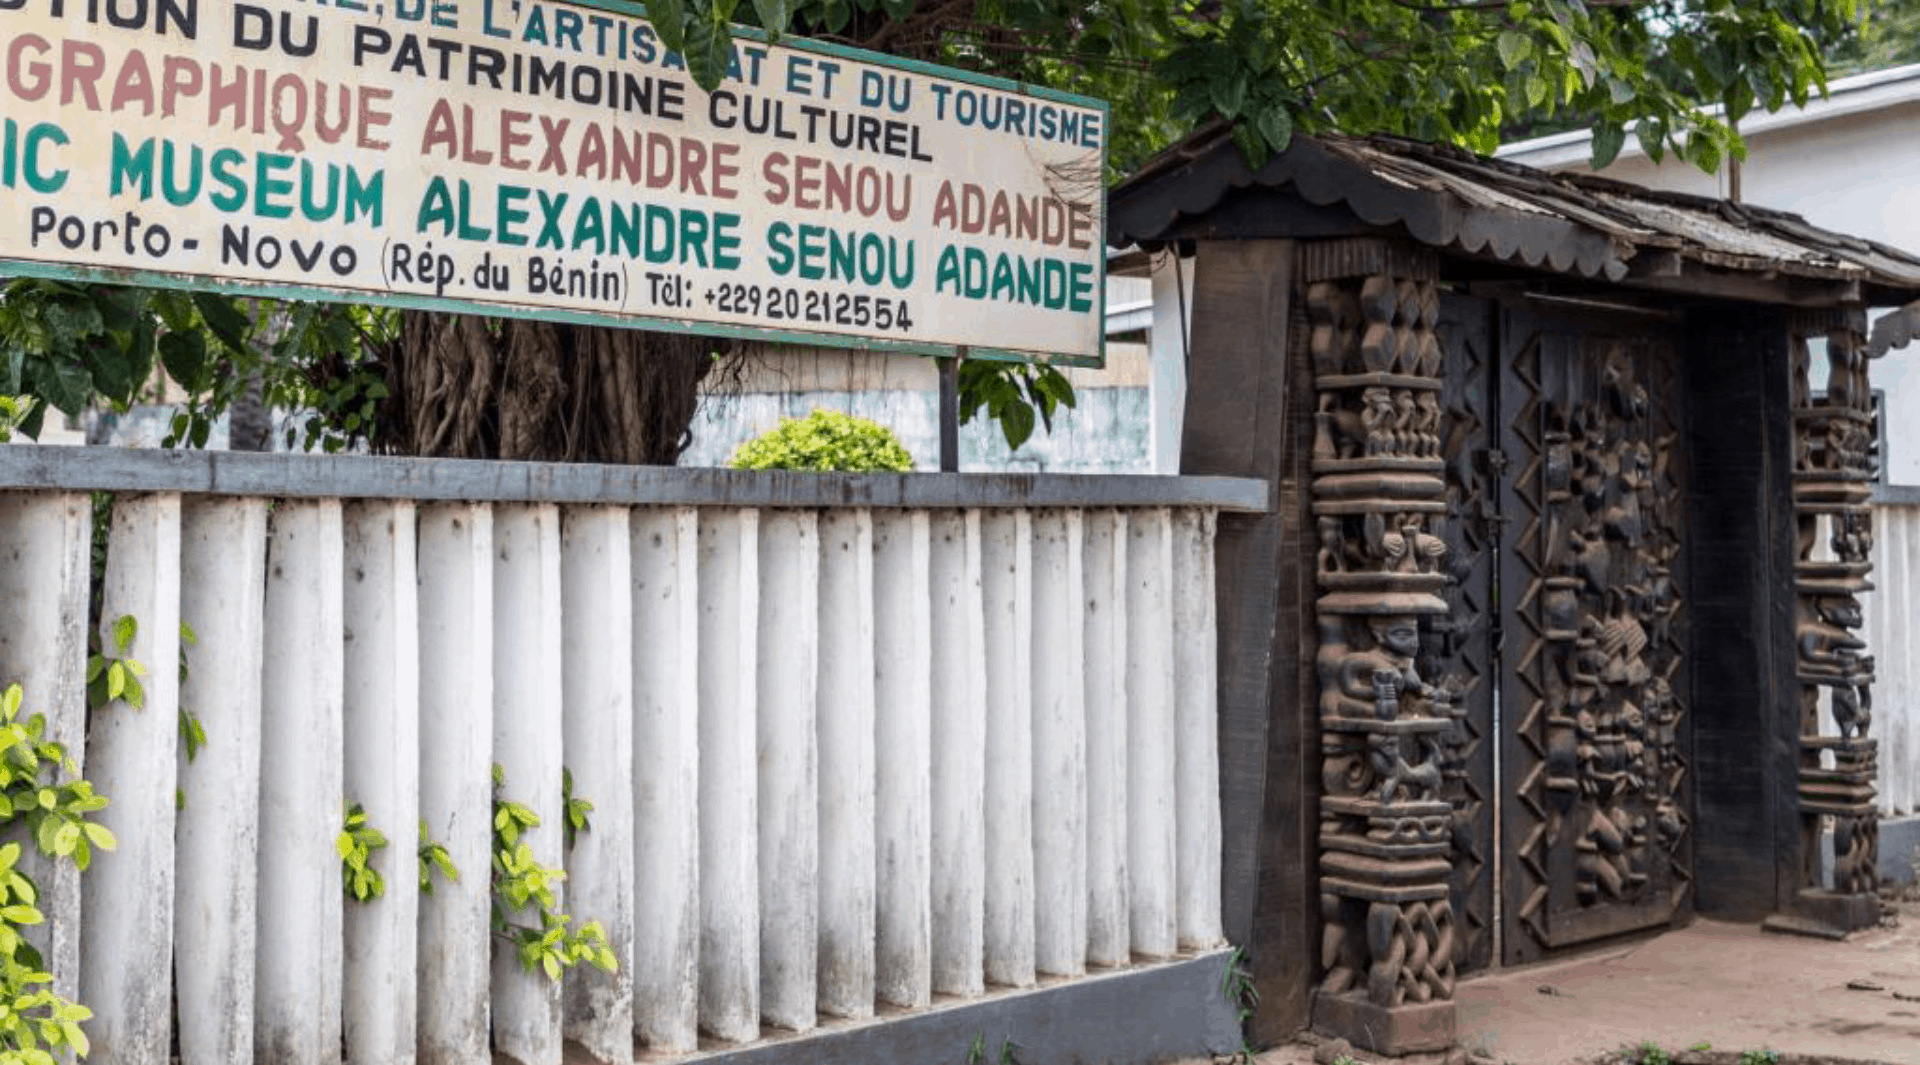 Alexandre Sènou Adandé Ethnographic Museum